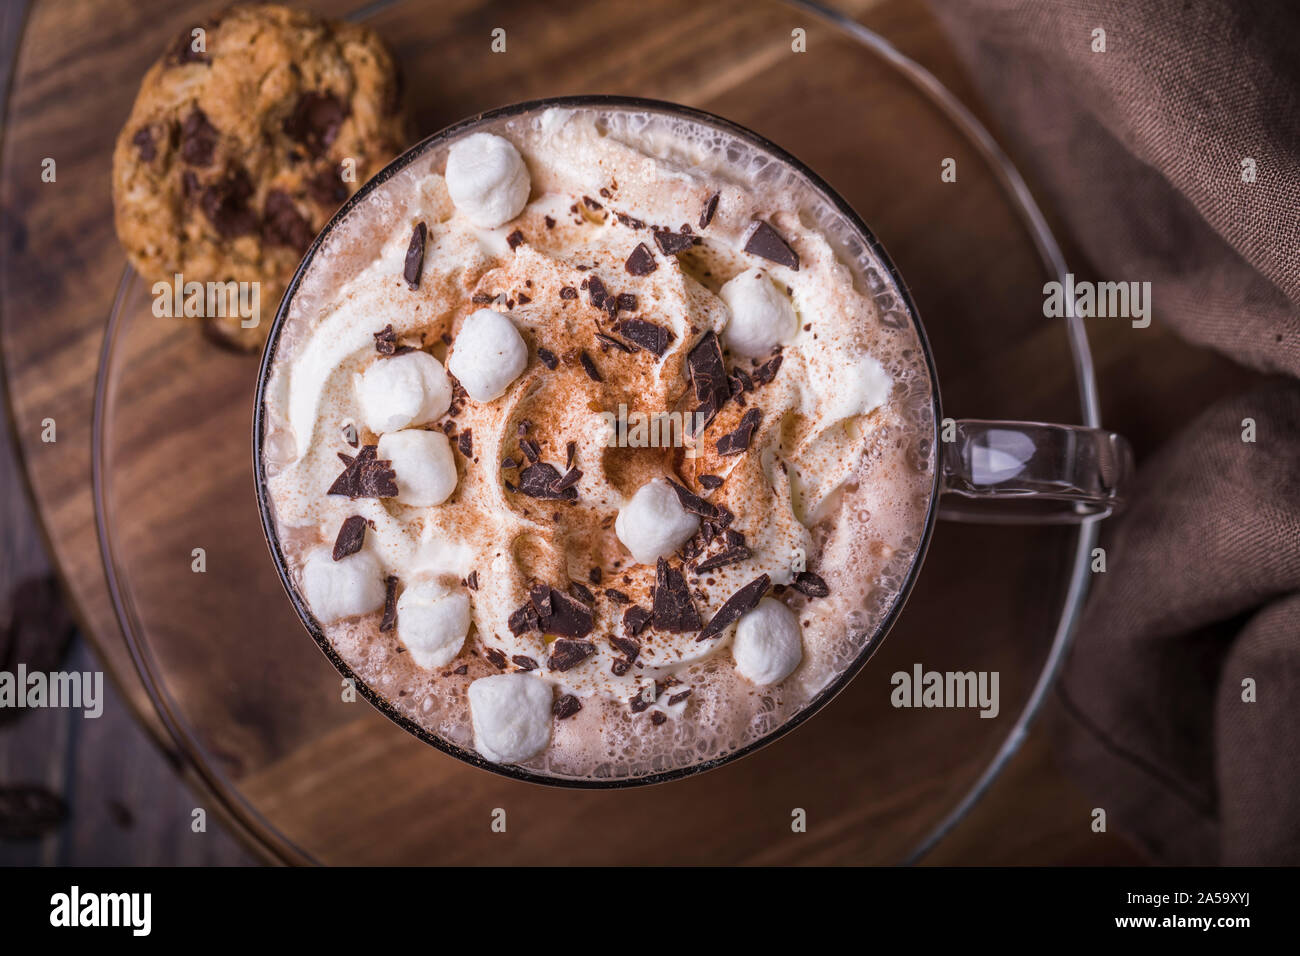 Eine Tasse heiße Schokolade mit Sahne, Marshmallows und Kakao von oben gesehen. Die Tasse ist auf einem Glas Deckel mit Chocolate Chip Cookie auf der Seite. Stockfoto